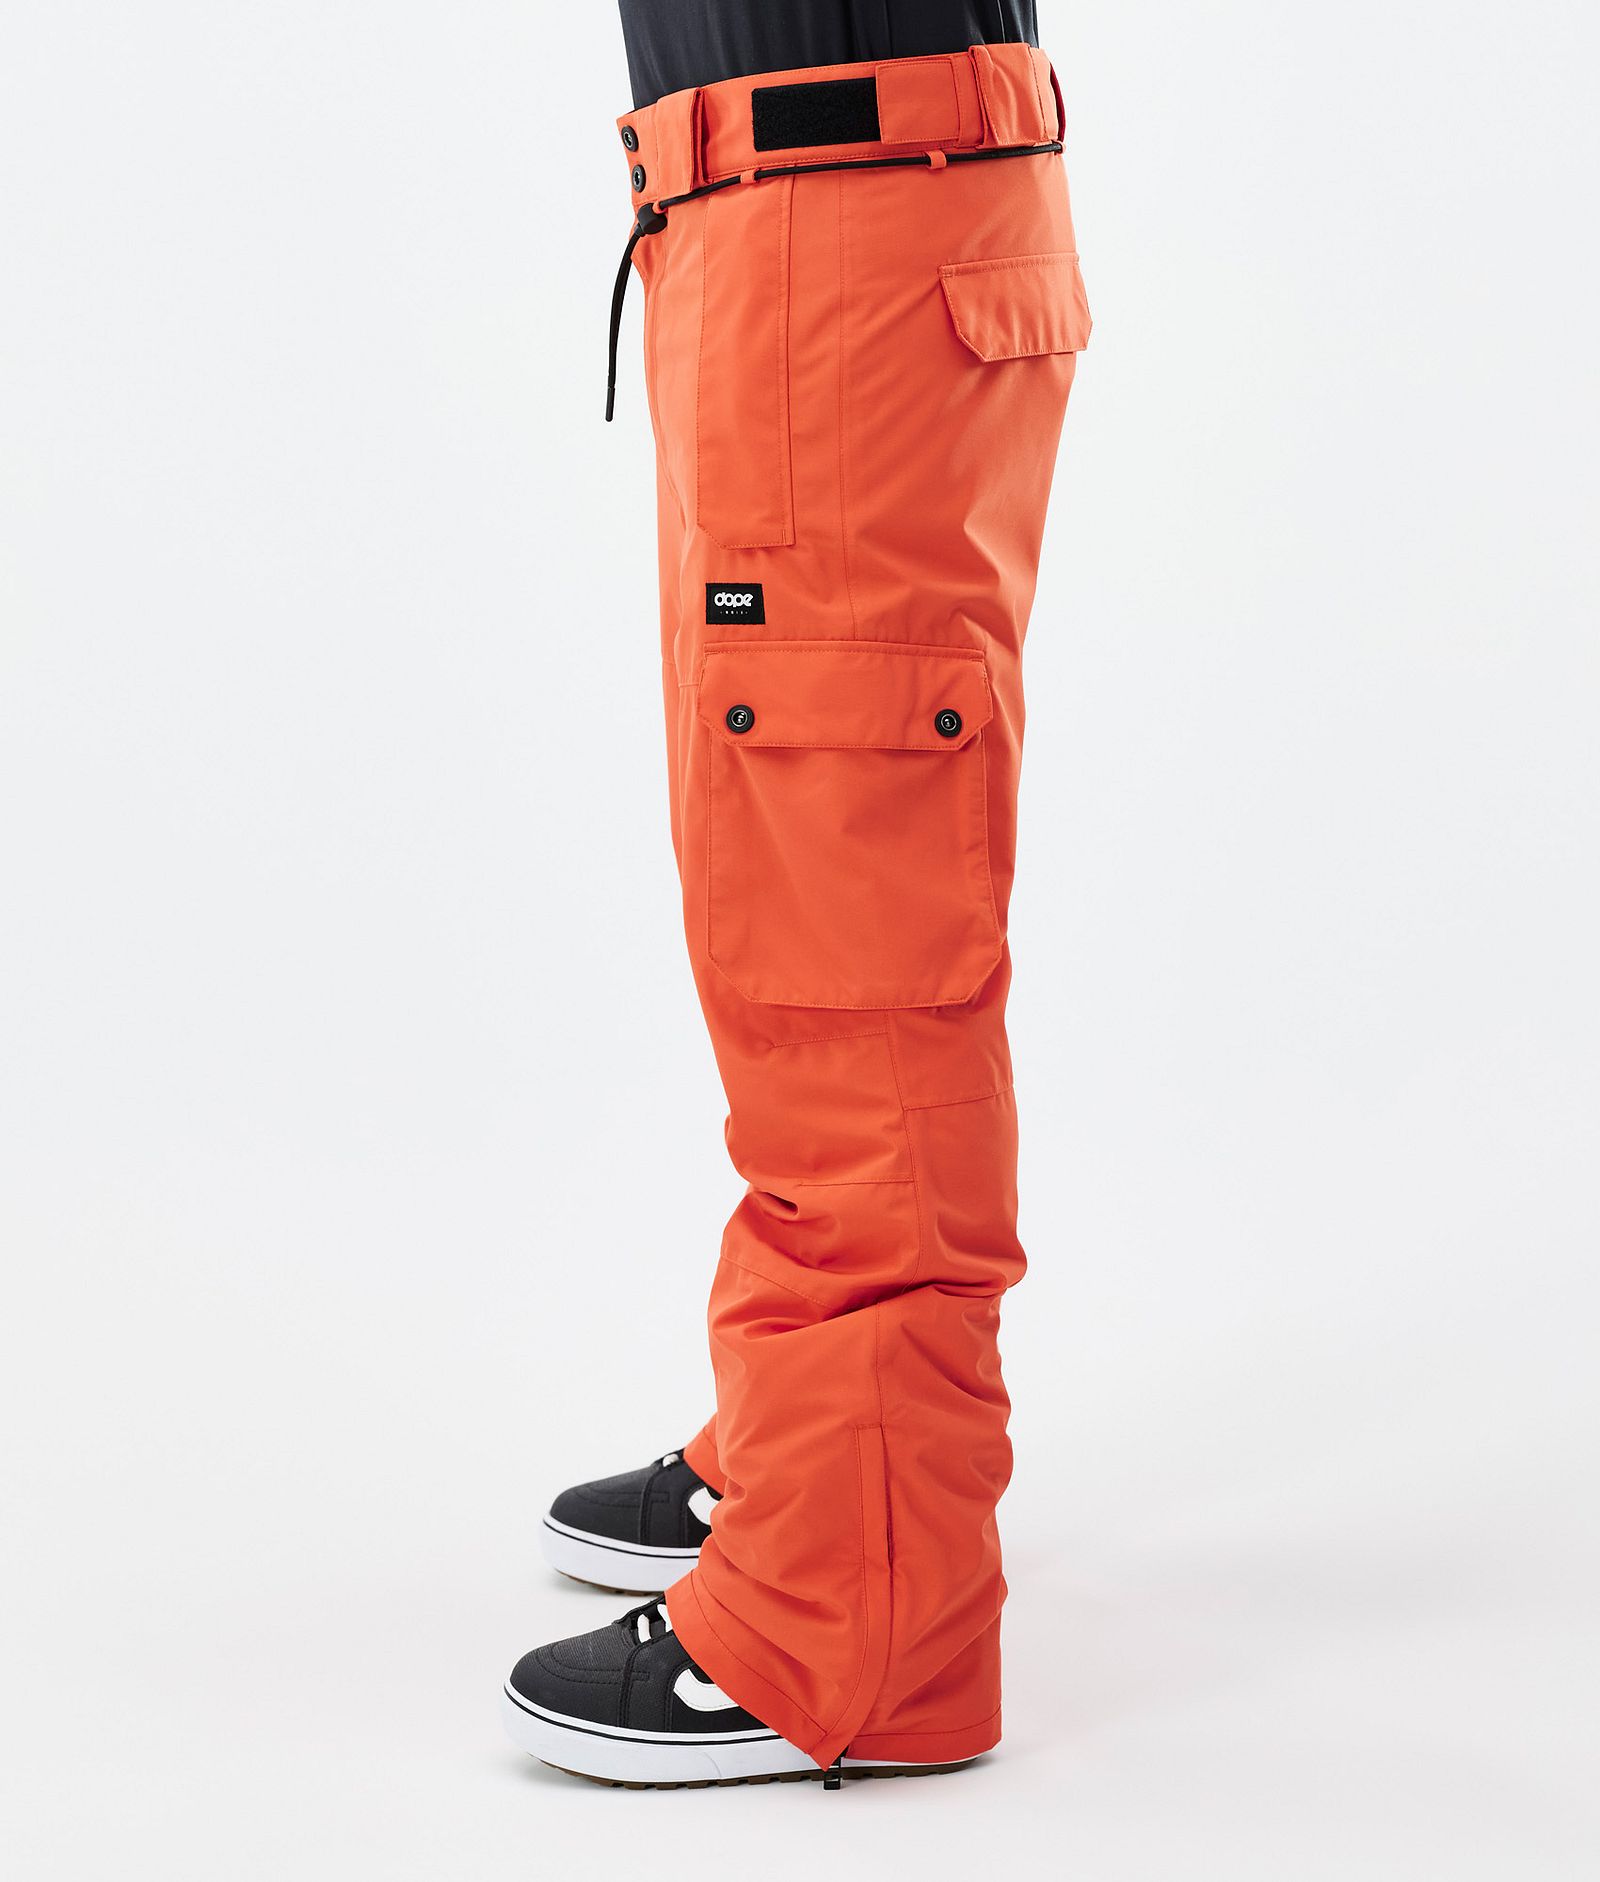 Iconic スノボ パンツ メンズ Orange